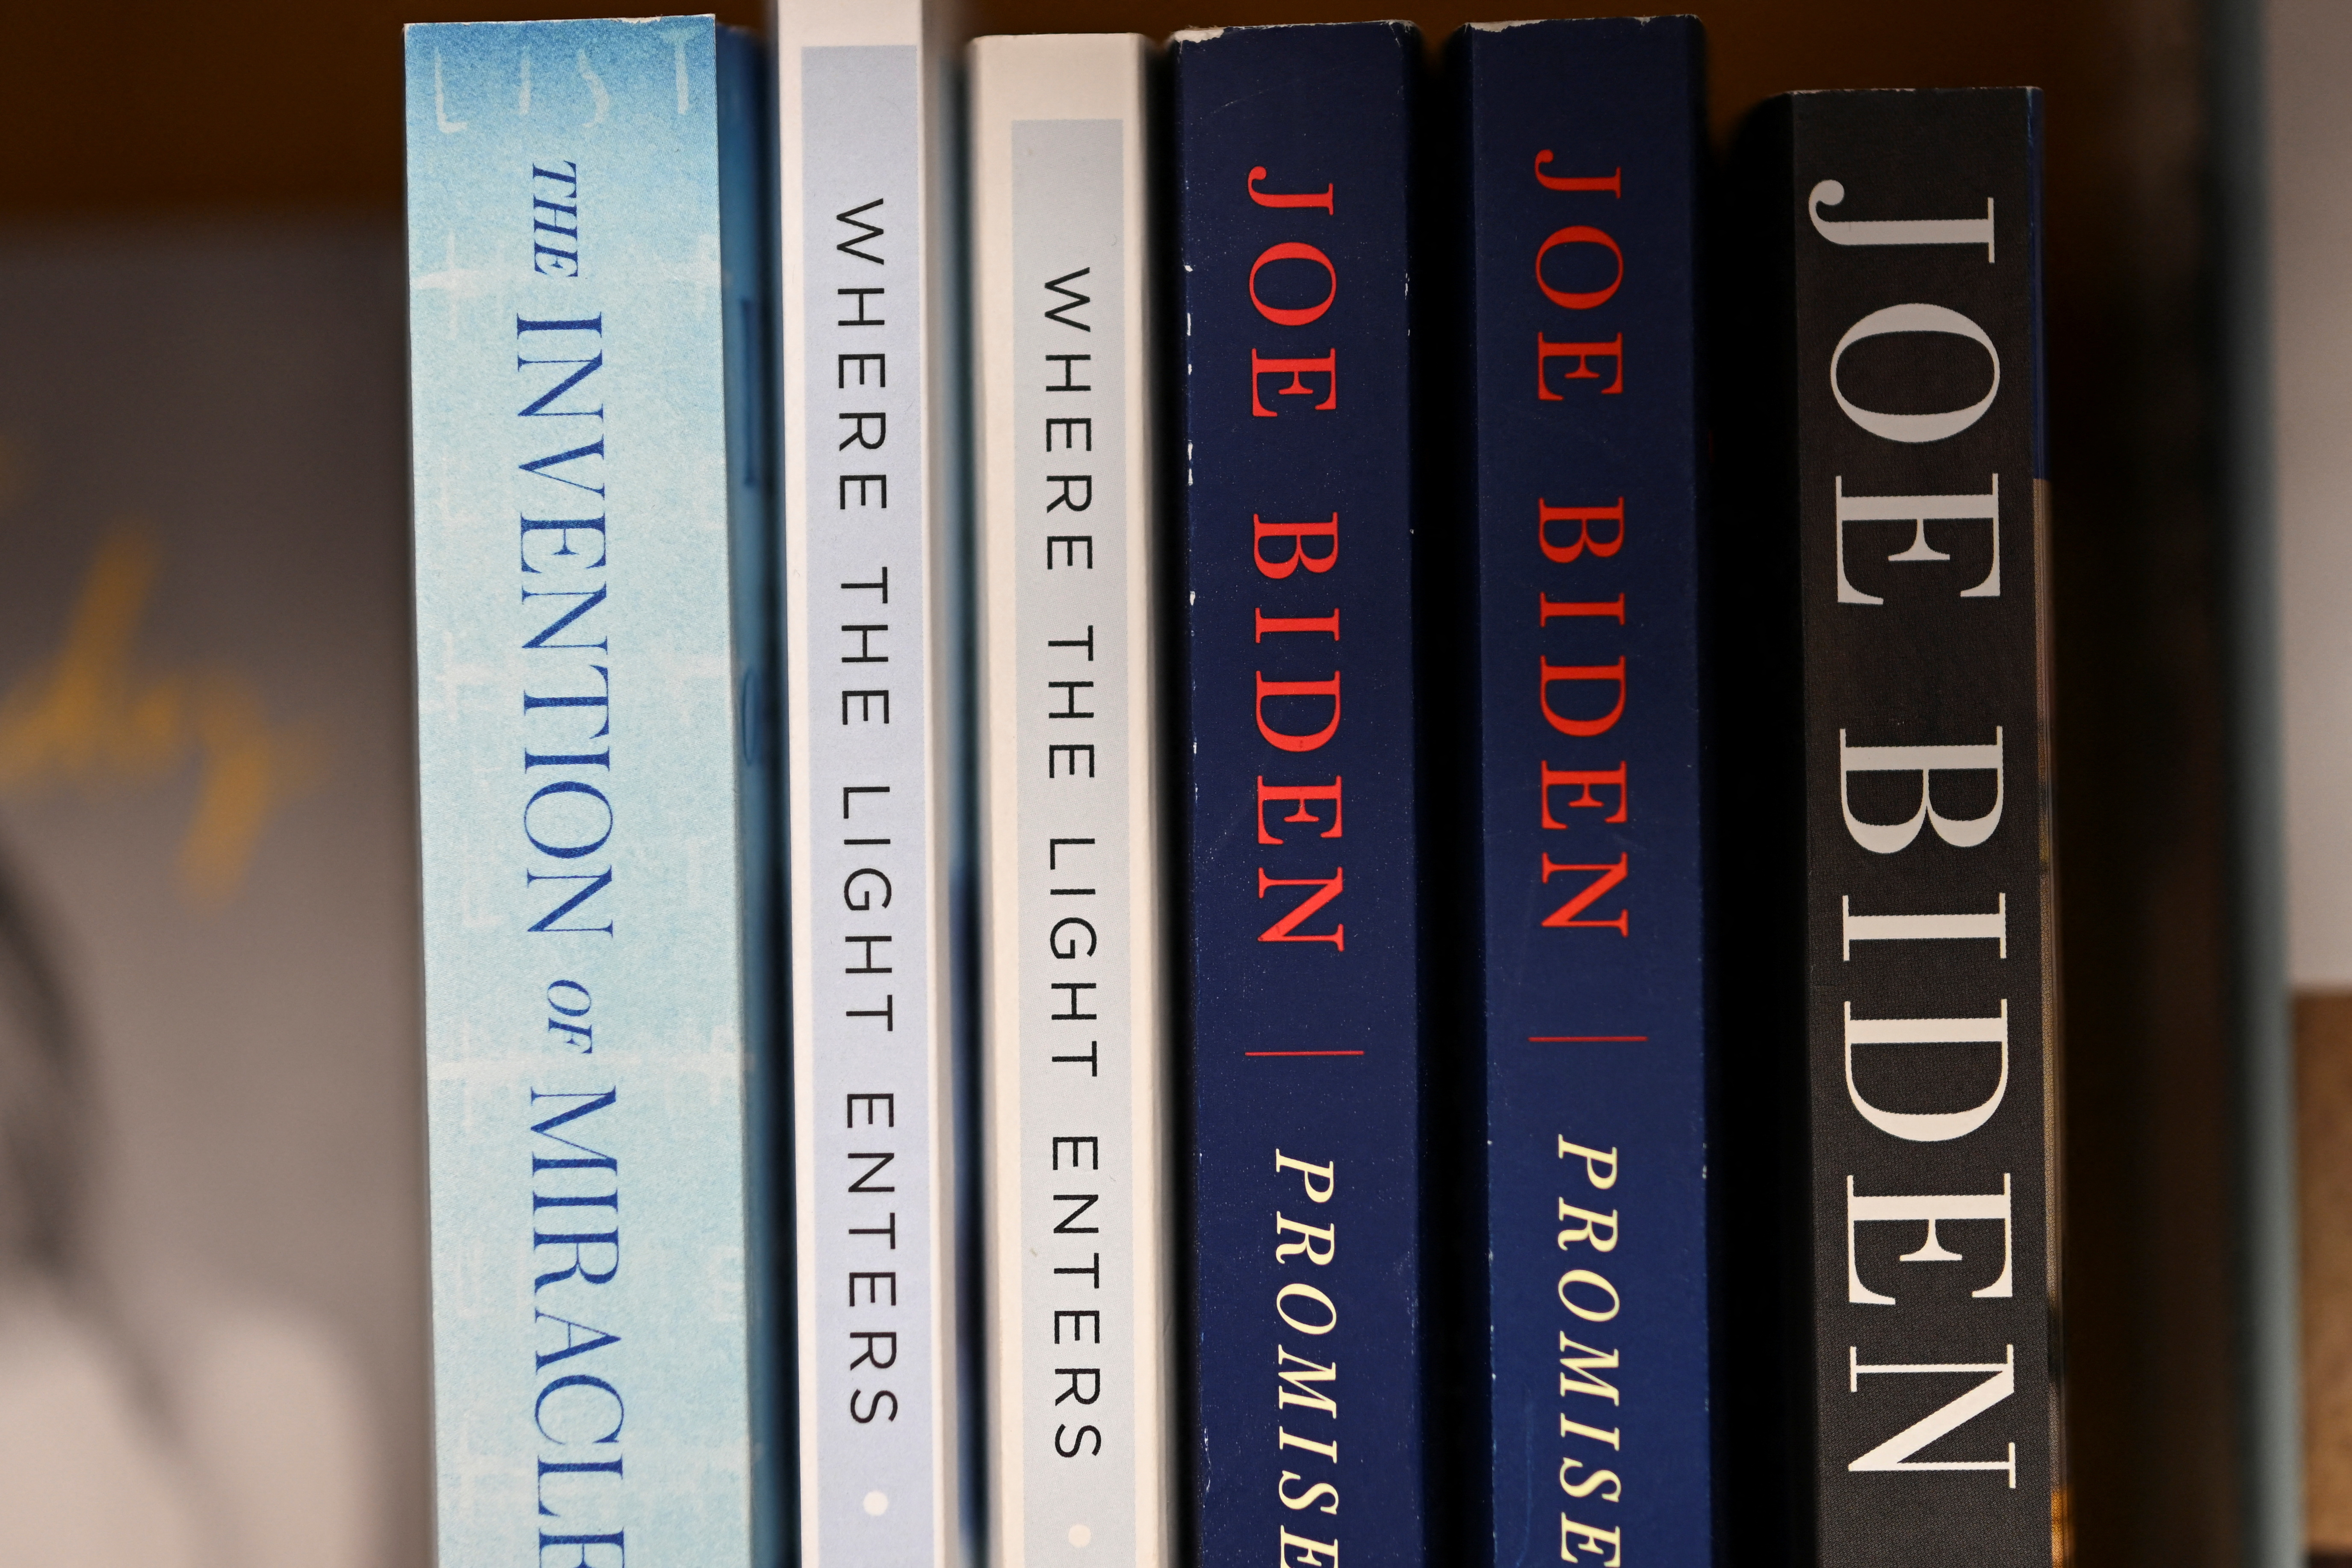 Los libros escritos por el presidente Joe Biden y la primera dama, la Dra. Jill Biden, se exhiben en una librería en la misma ciudad donde Biden posee una casa en la playa, luego de que agentes del FBI realizaran una búsqueda planificada de la propiedad en Rehoboth Beach